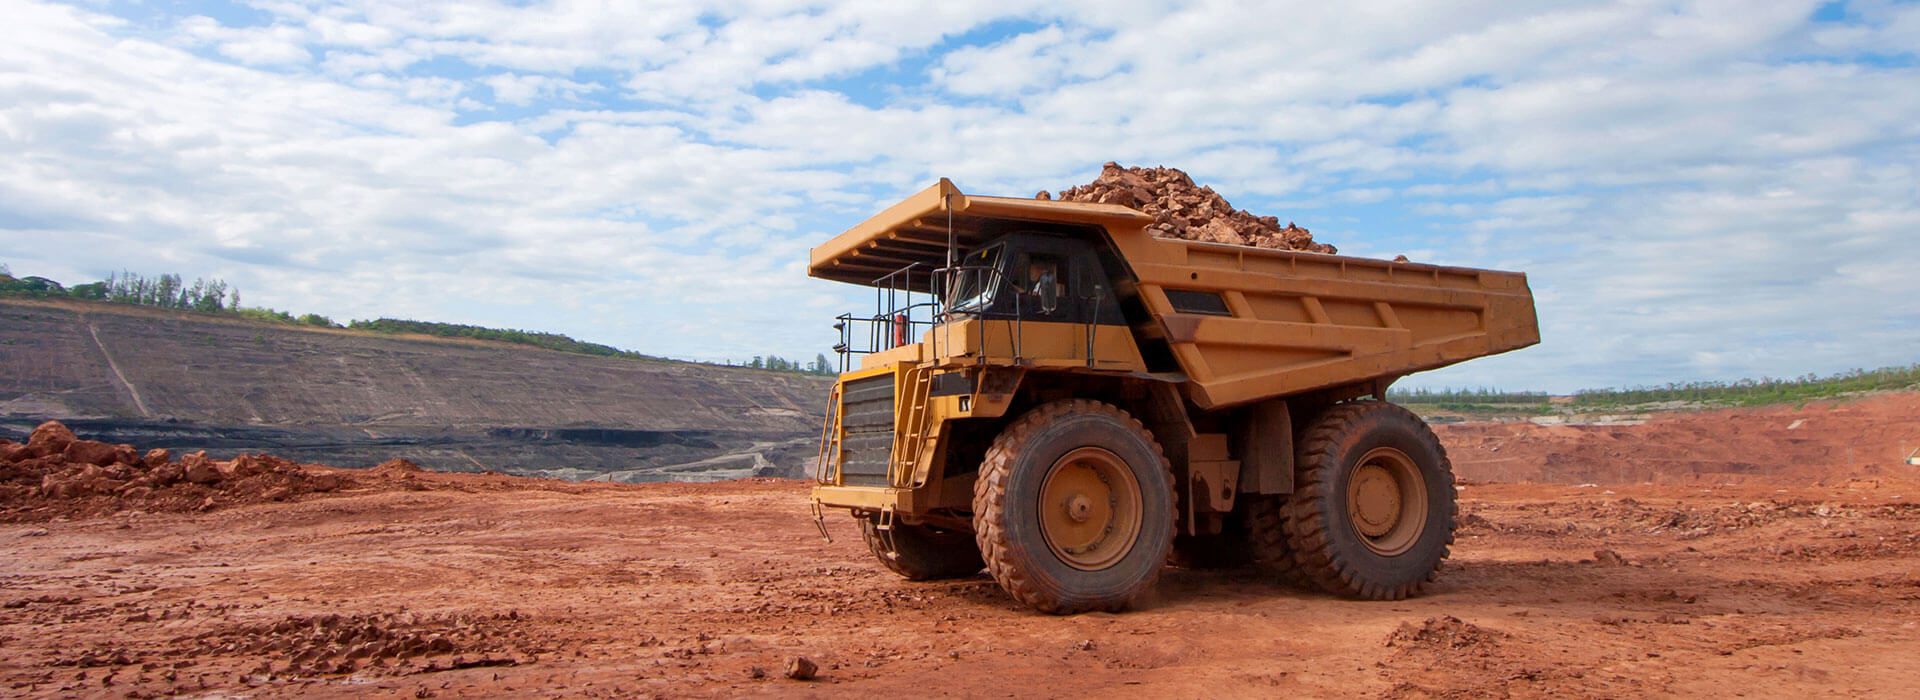 La minería como motor de desarrollo económico en Perú